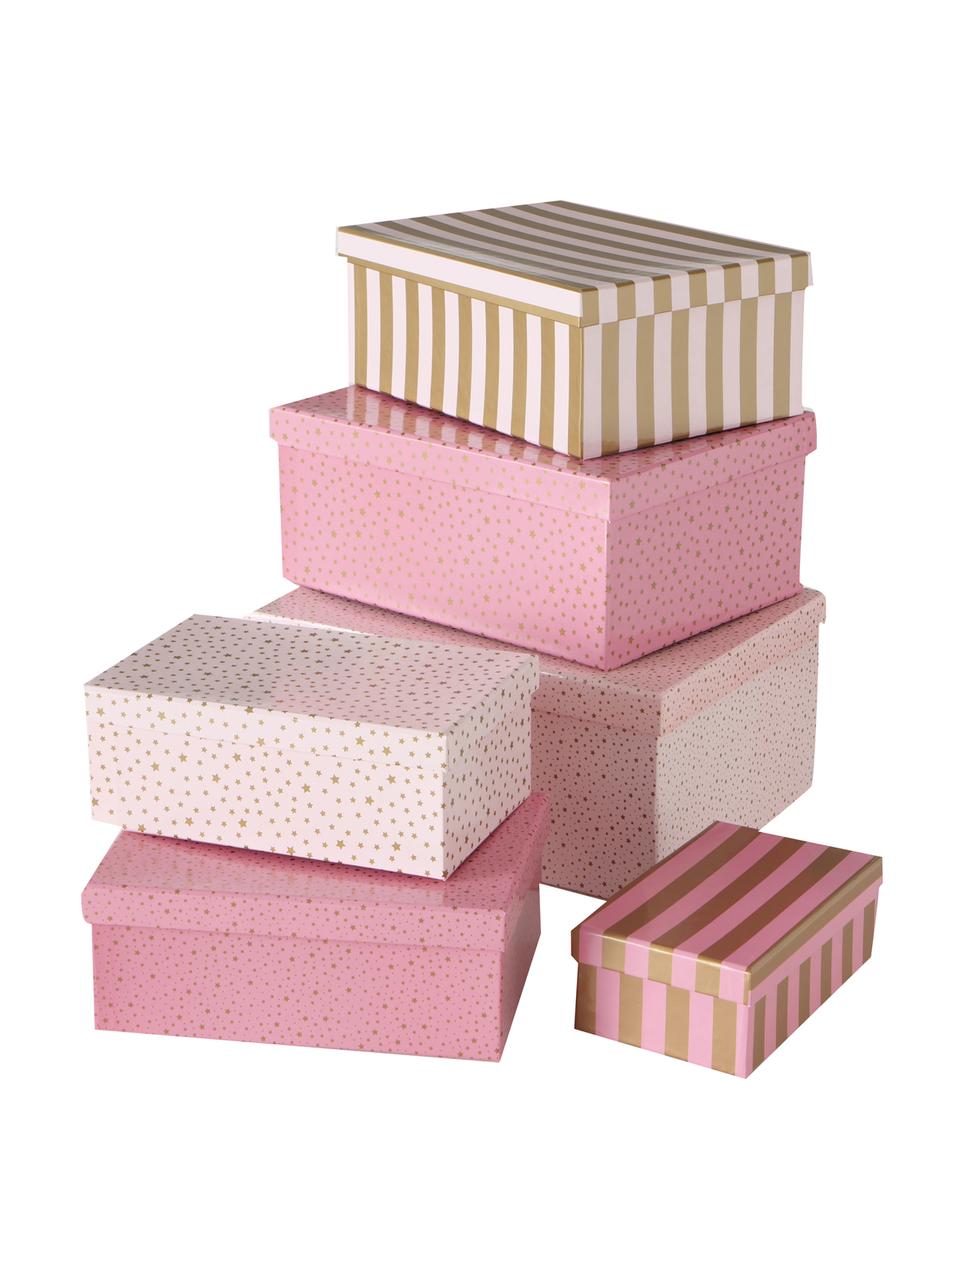 Komplet pudełek prezentowych Marit, 6 elem., Papier, Odcienie różowego, odcienie złotego, Komplet z różnymi rozmiarami